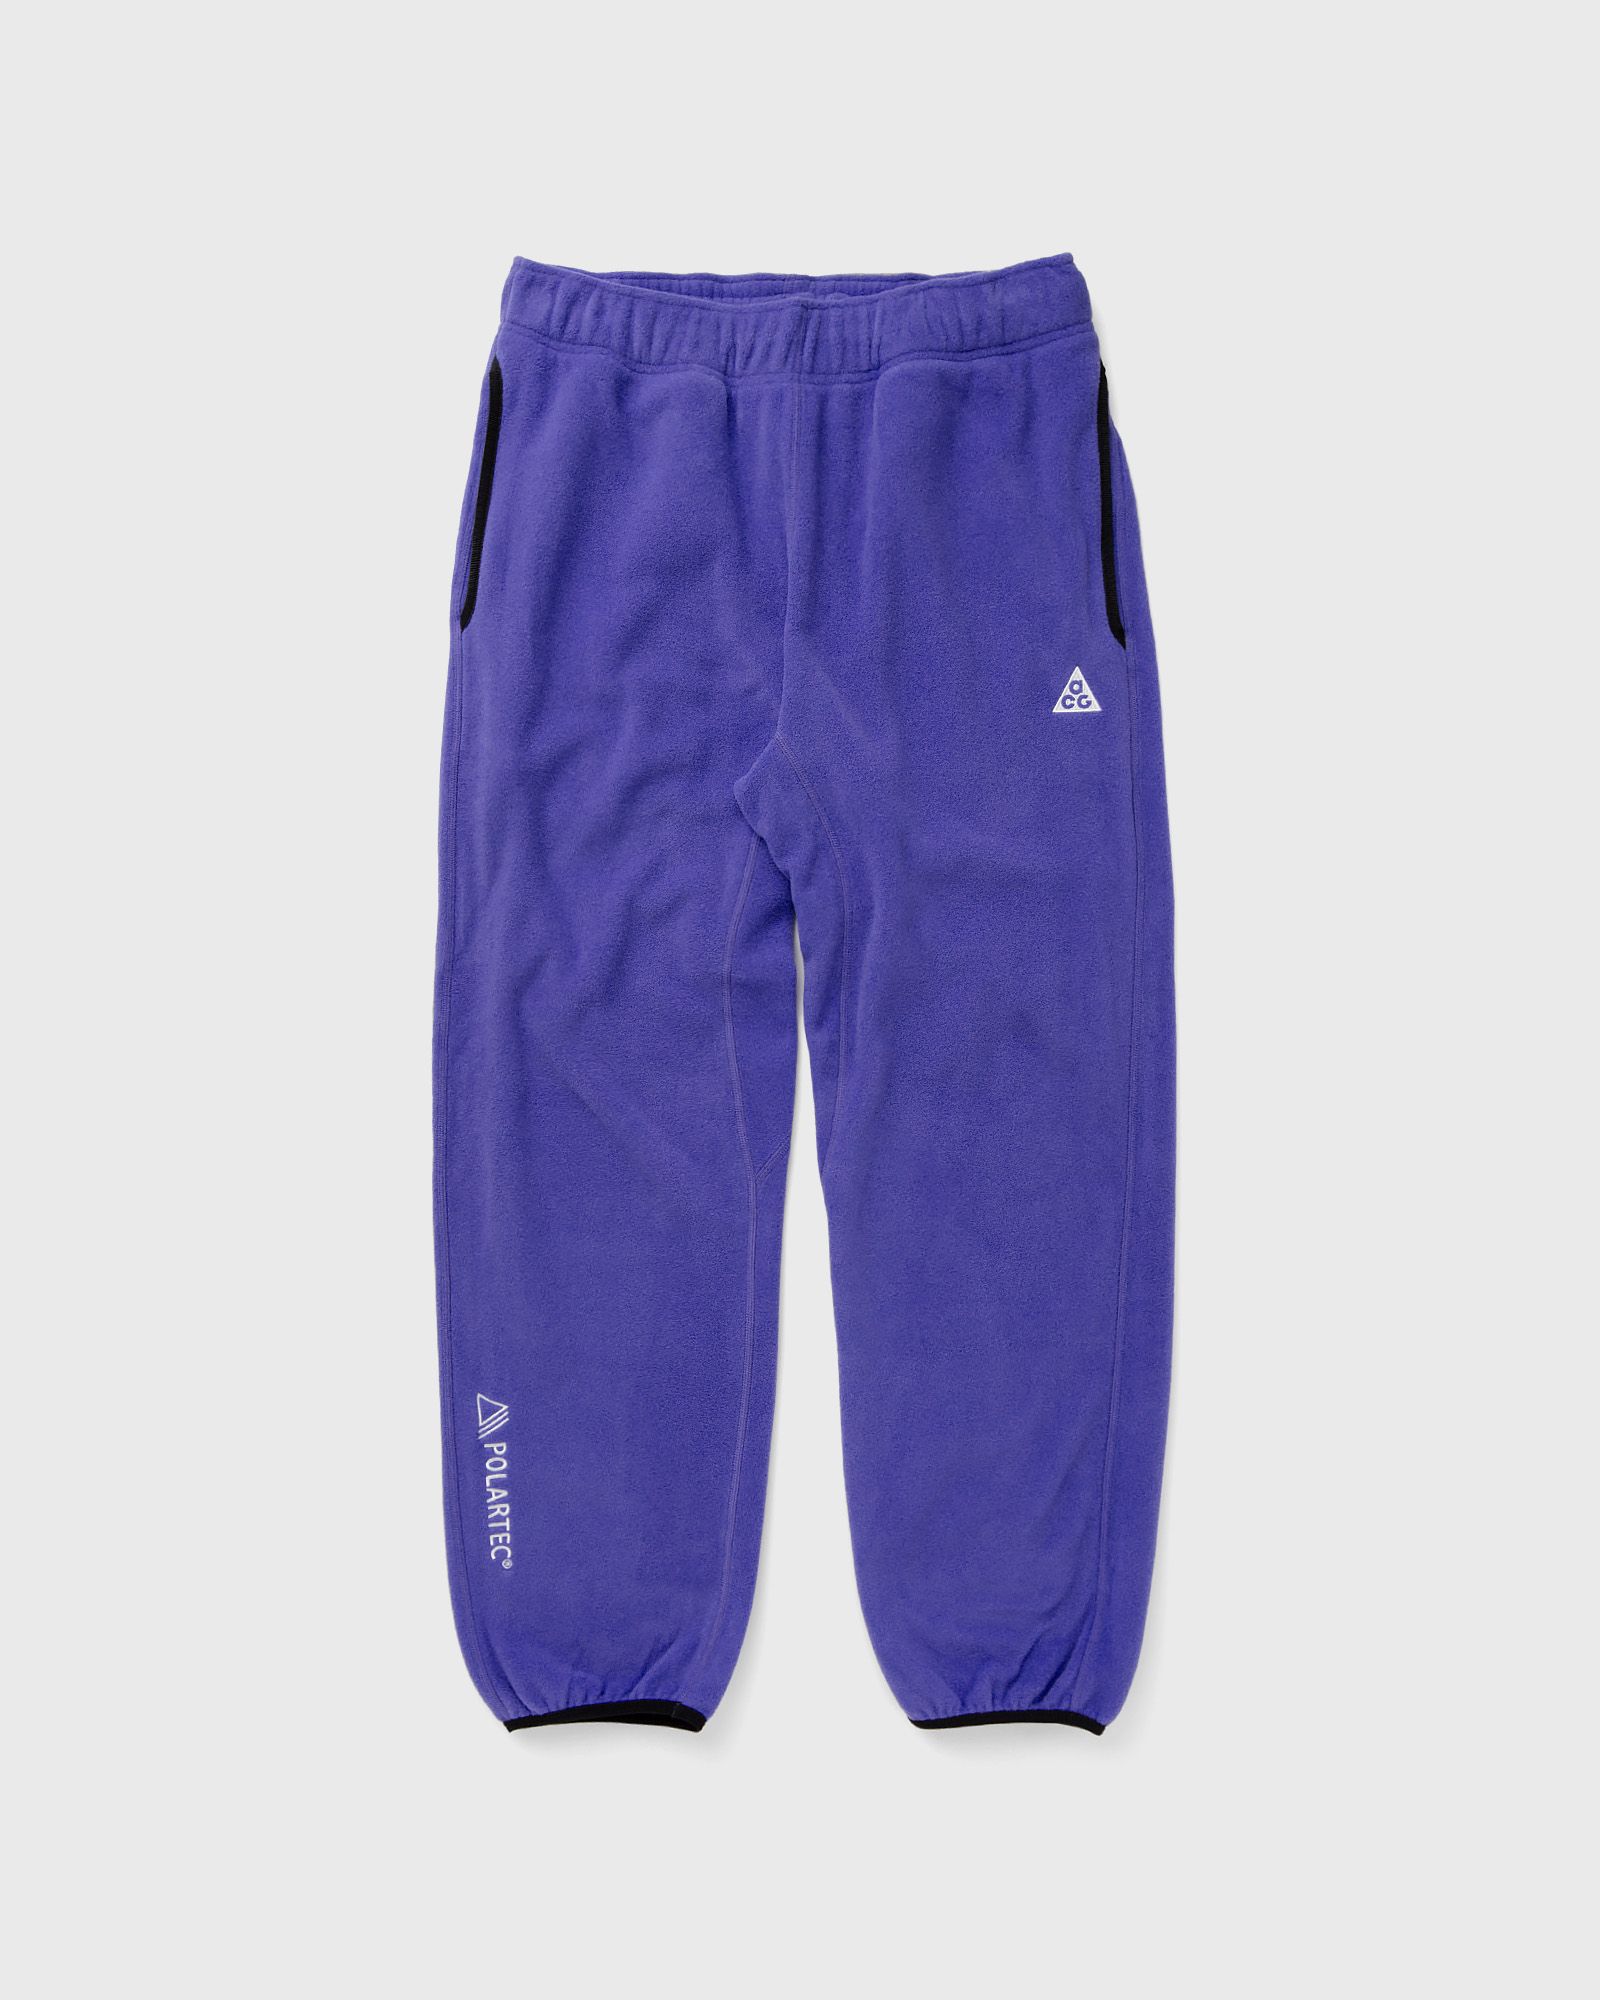 Nike - acg polartec wolf tree pants men sweatpants purple in größe:xxl